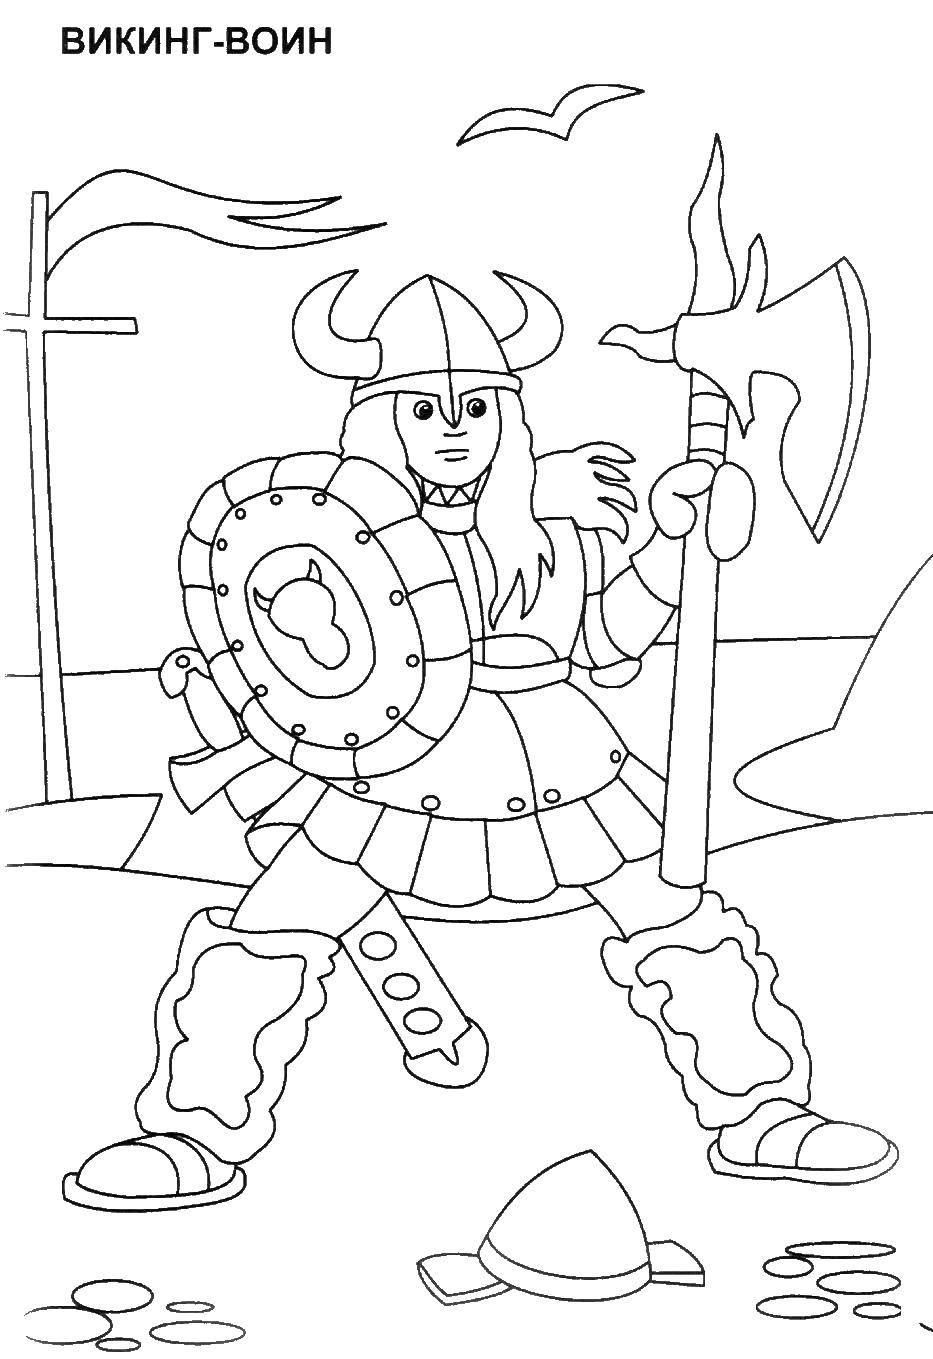 Coloring Viking. Category the crusaders. Tags:  Viking.